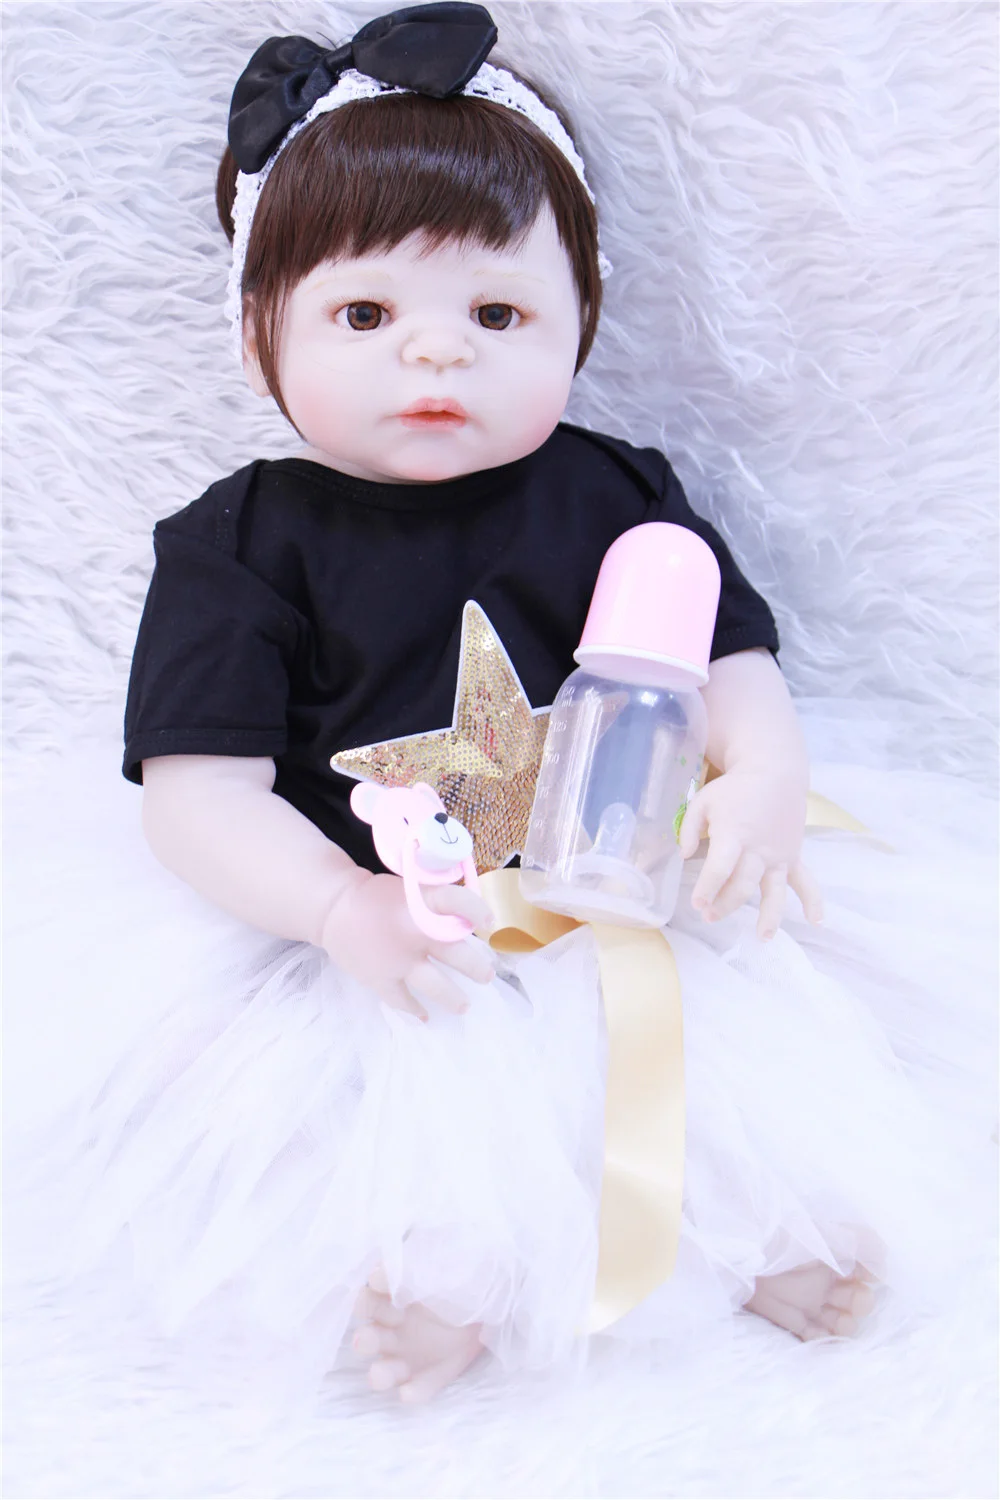 

23 Full силиконовые куклы для новорожденных и малышей детские игрушки-reborn lifelike lol Оригинальный винил новорожденных купаться принцесса малыша ...